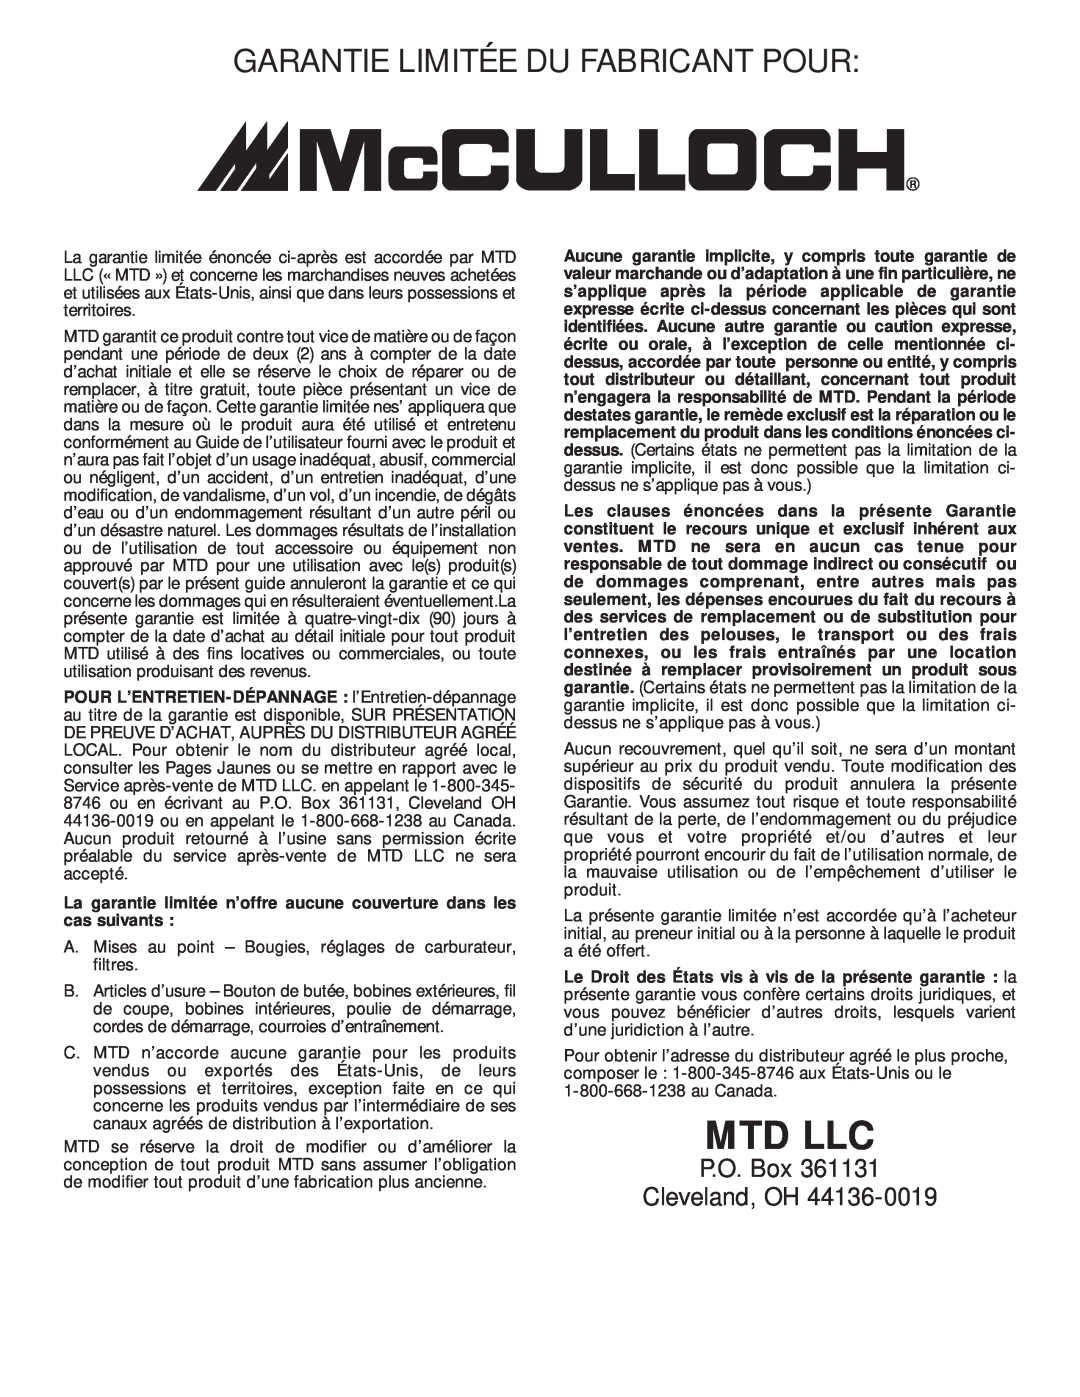 McCulloch MT705 Garantie Limitée Du Fabricant Pour, La garantie limitée n’offre aucune couverture dans les cas suivants 